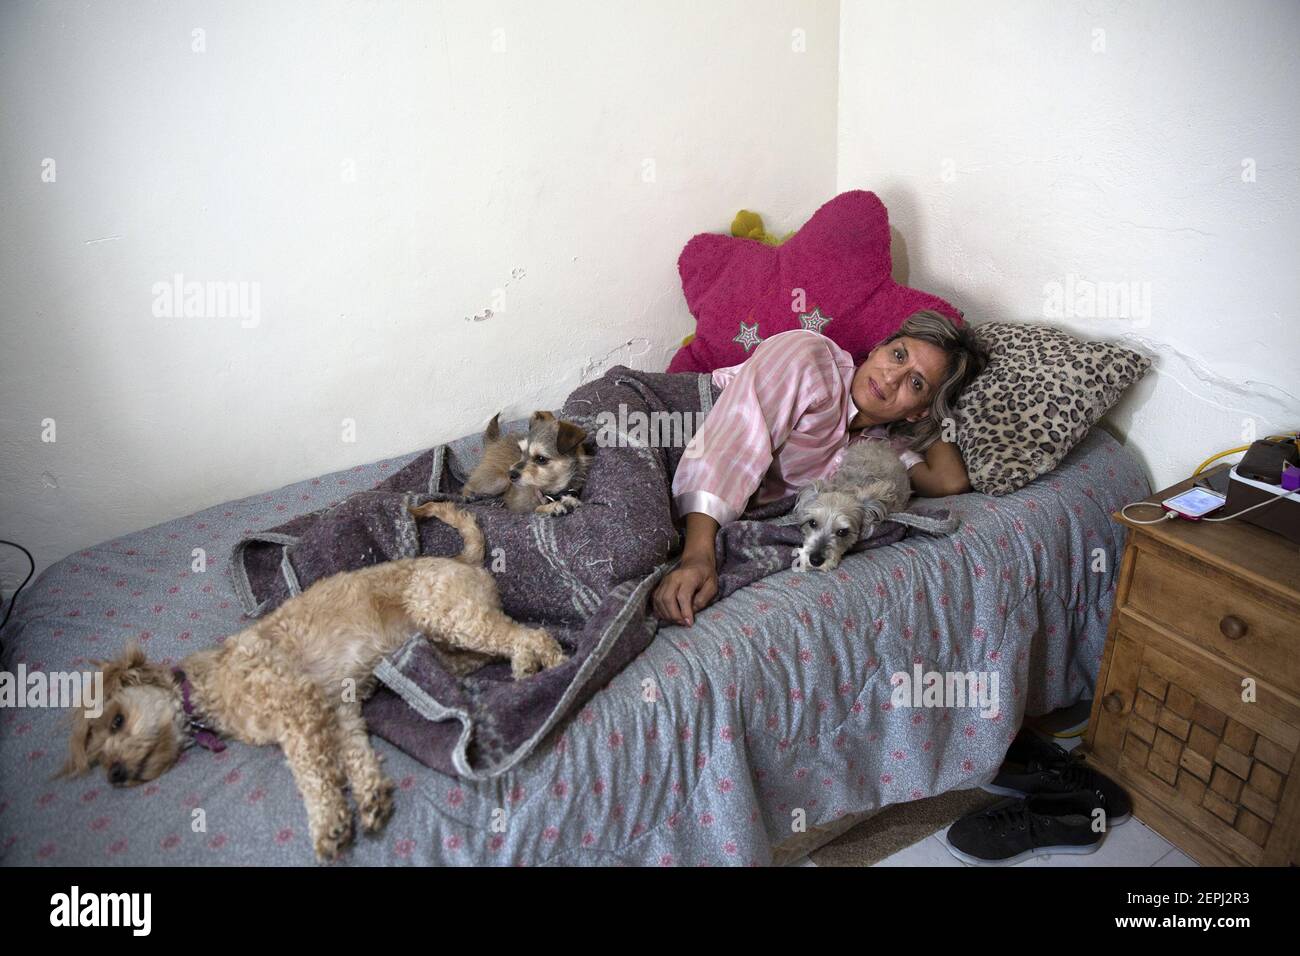 Palmira Se Encuentra En La Cama Con Sus Perros En Su Casa En La Ciudad De M Xico El De Marzo